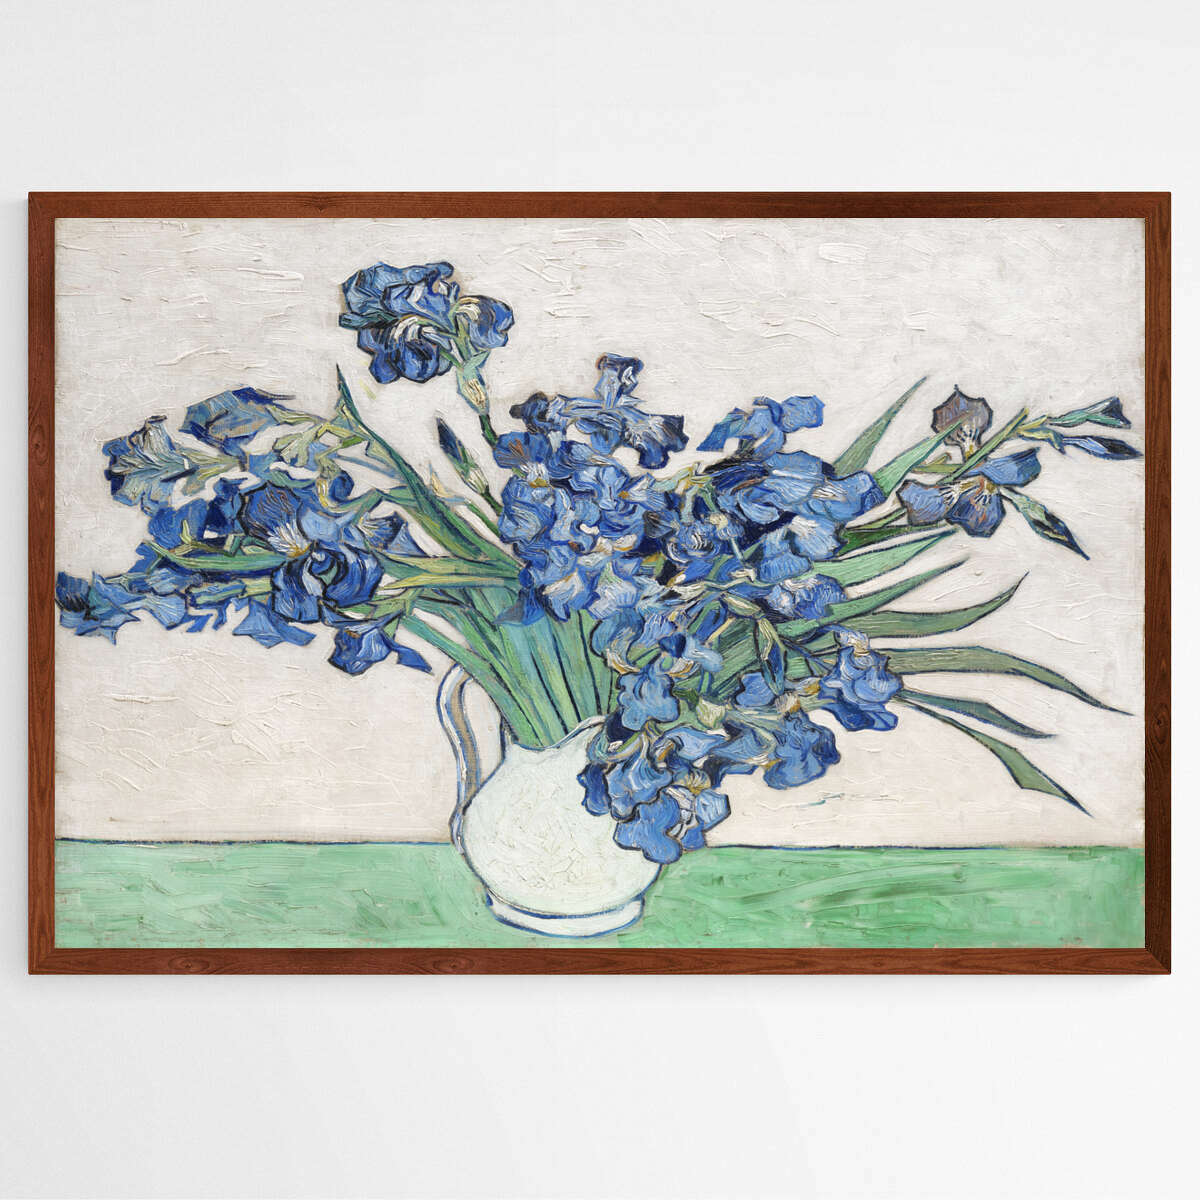 Irises in a Vase by Vincent Van Gogh | Vincent Van Gogh Wall Art Prints - The Canvas Hive